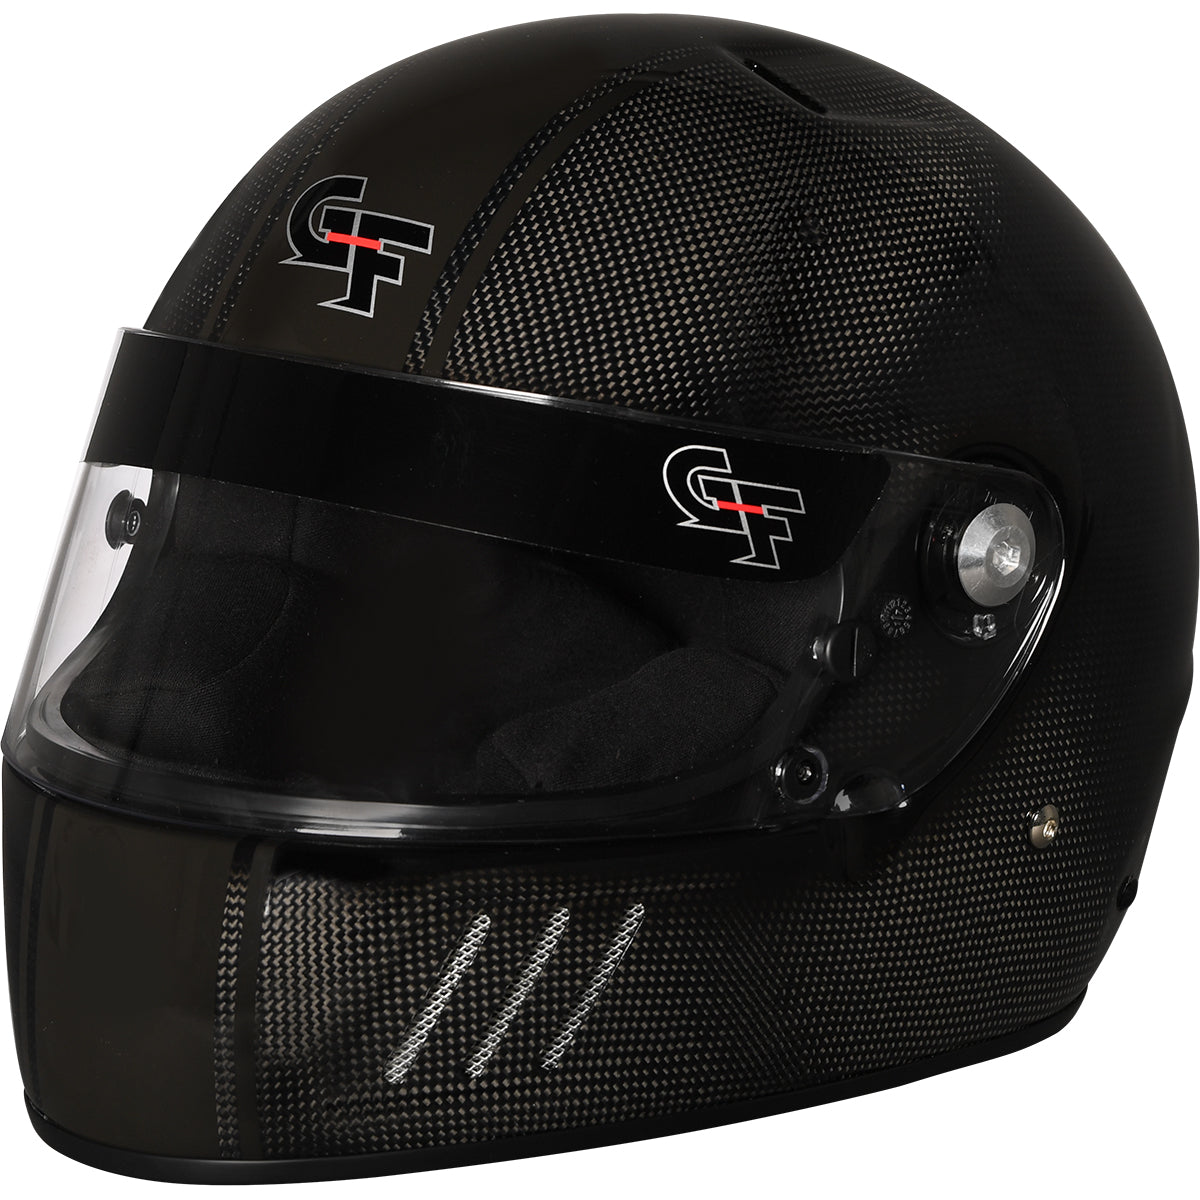 G-FORCE Racing Gear CF3 FULL FACE SML BK SA2015 3128SMLBK